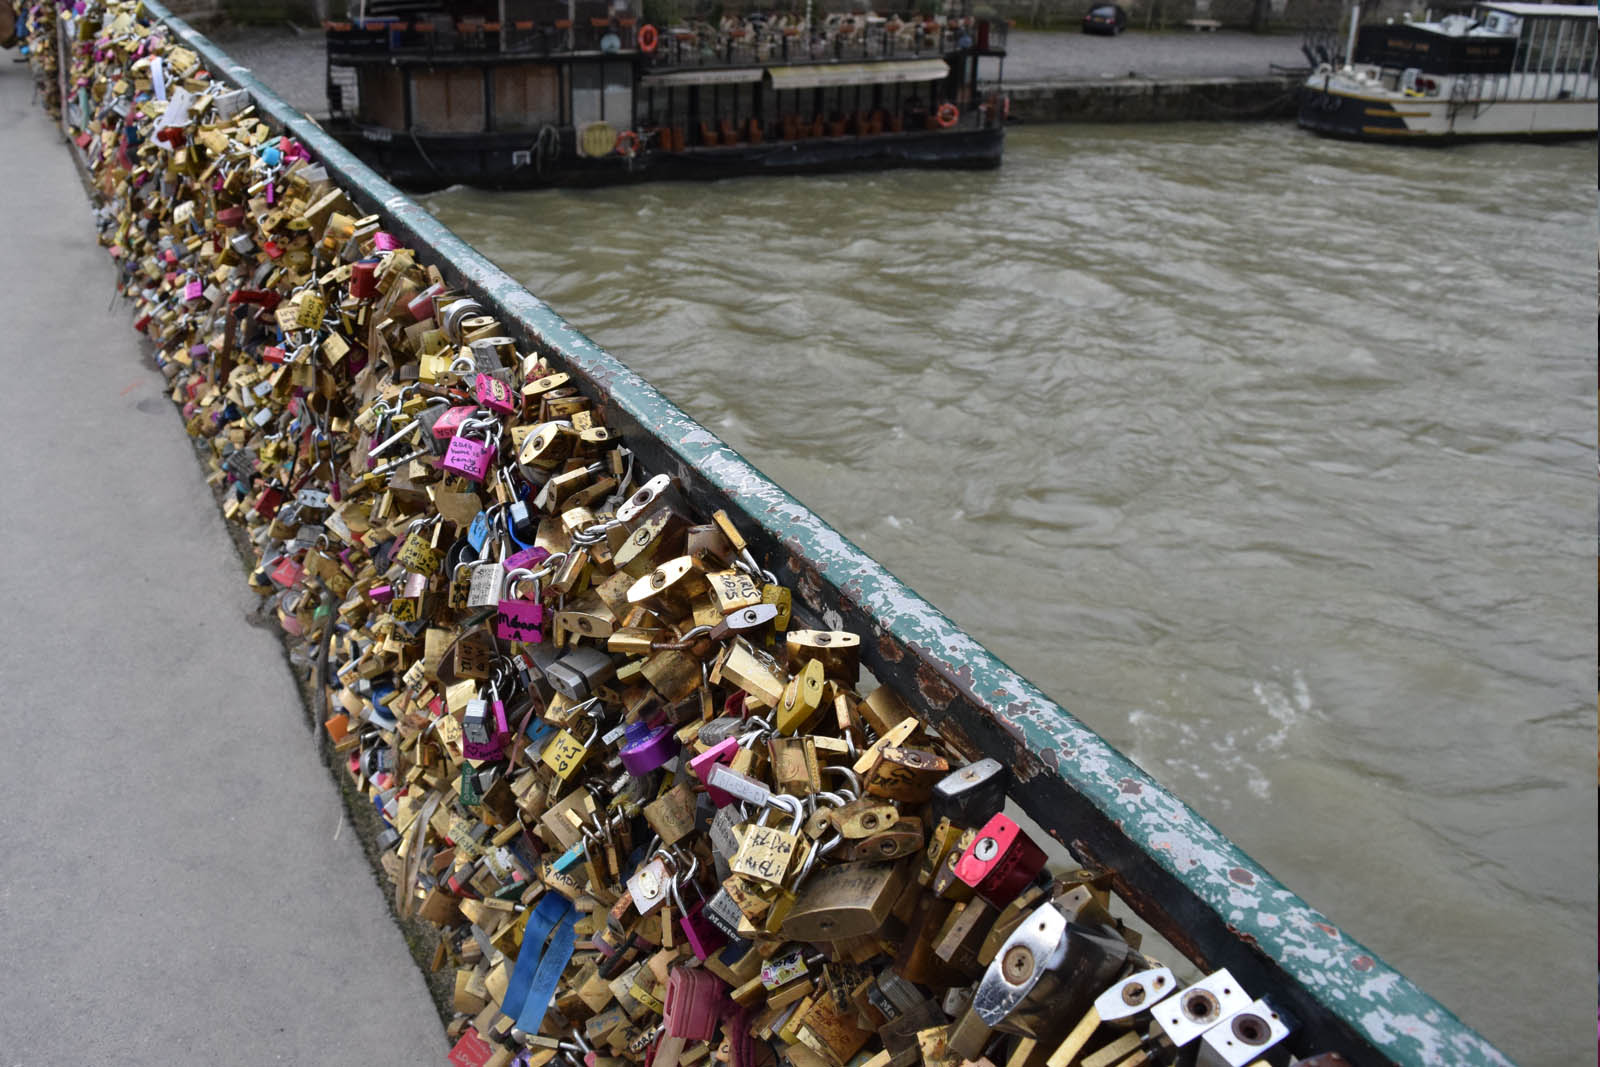 Romantisch weekend Parijs - brug met liefdes slotjes